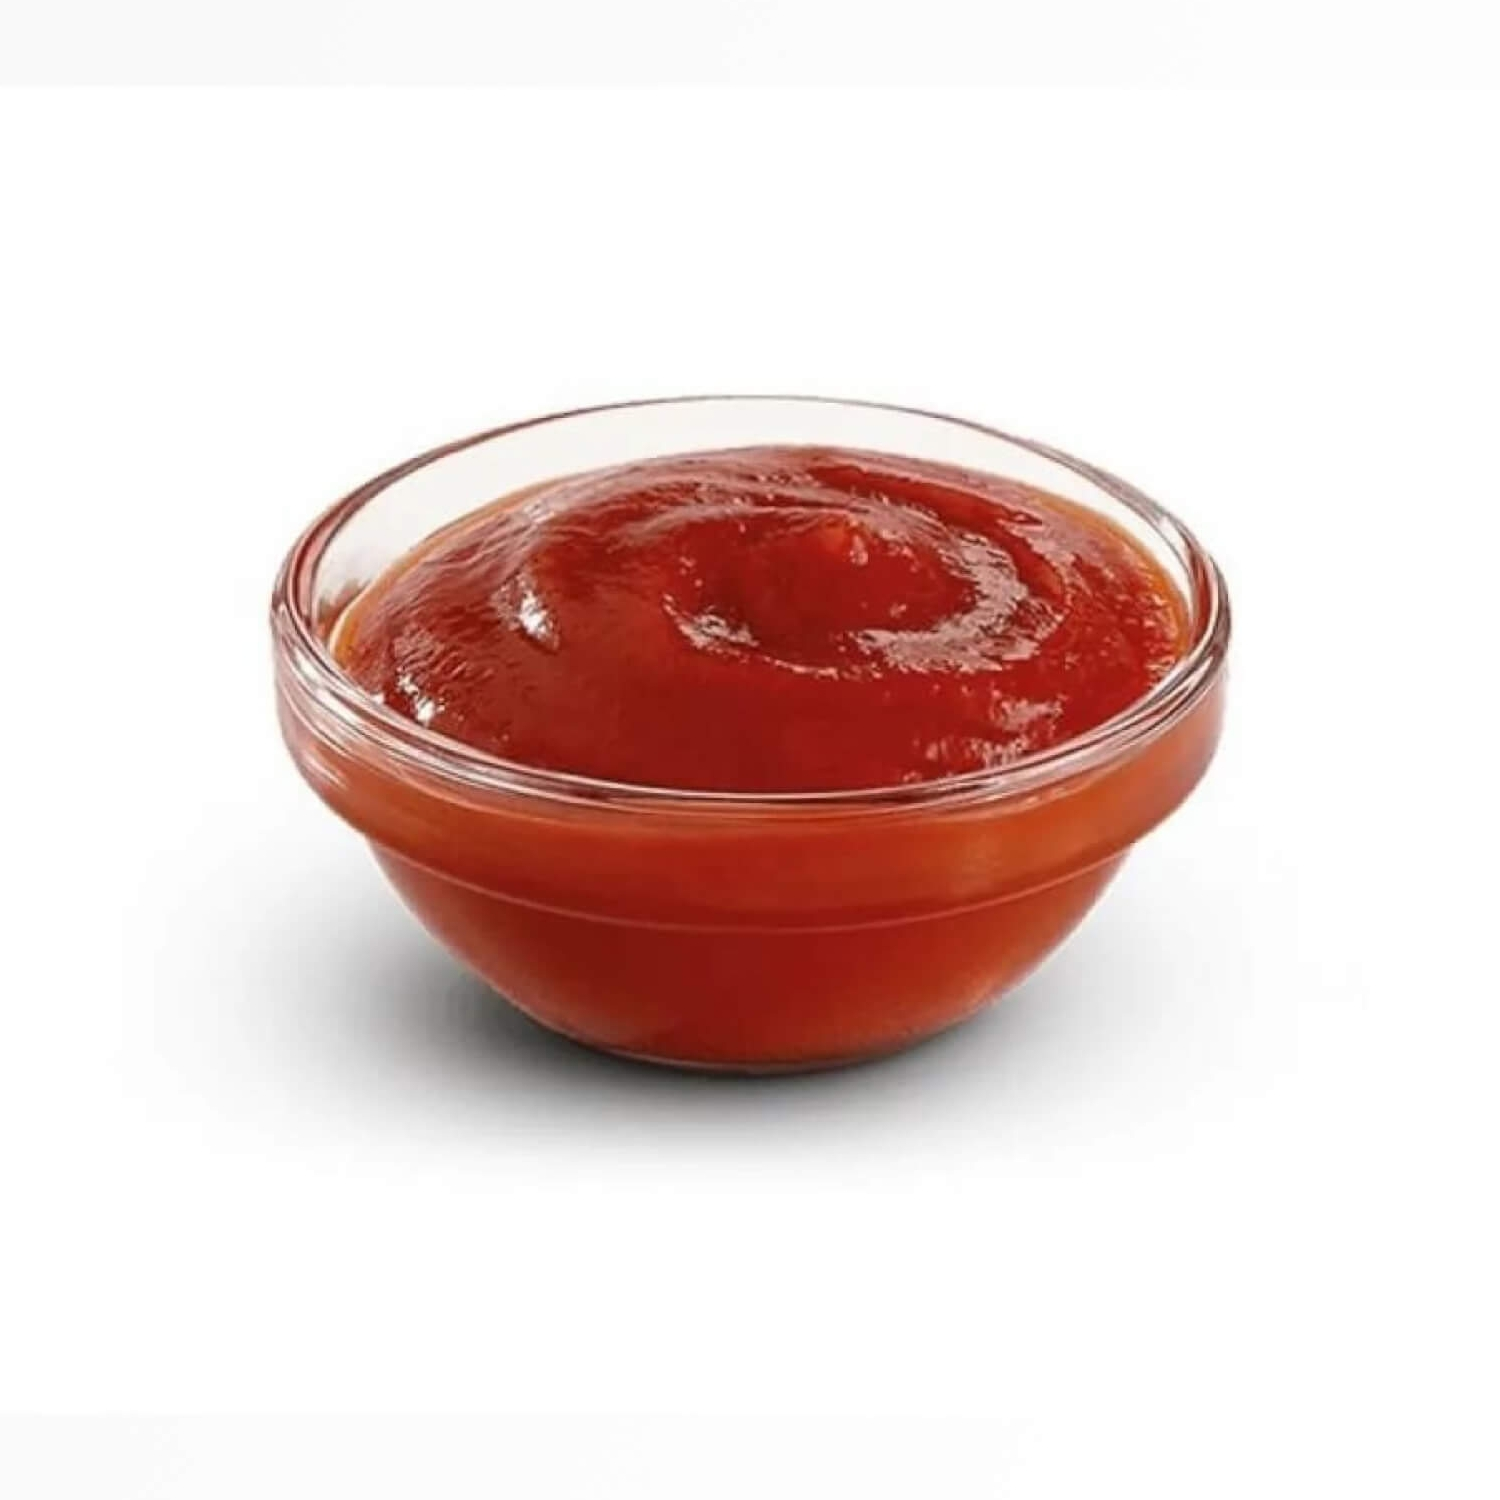 Прозрачный кетчуп. Кетчуп в соуснике. Томатная паста в соуснице. Соус томатный 50г. Соус в соуснике.